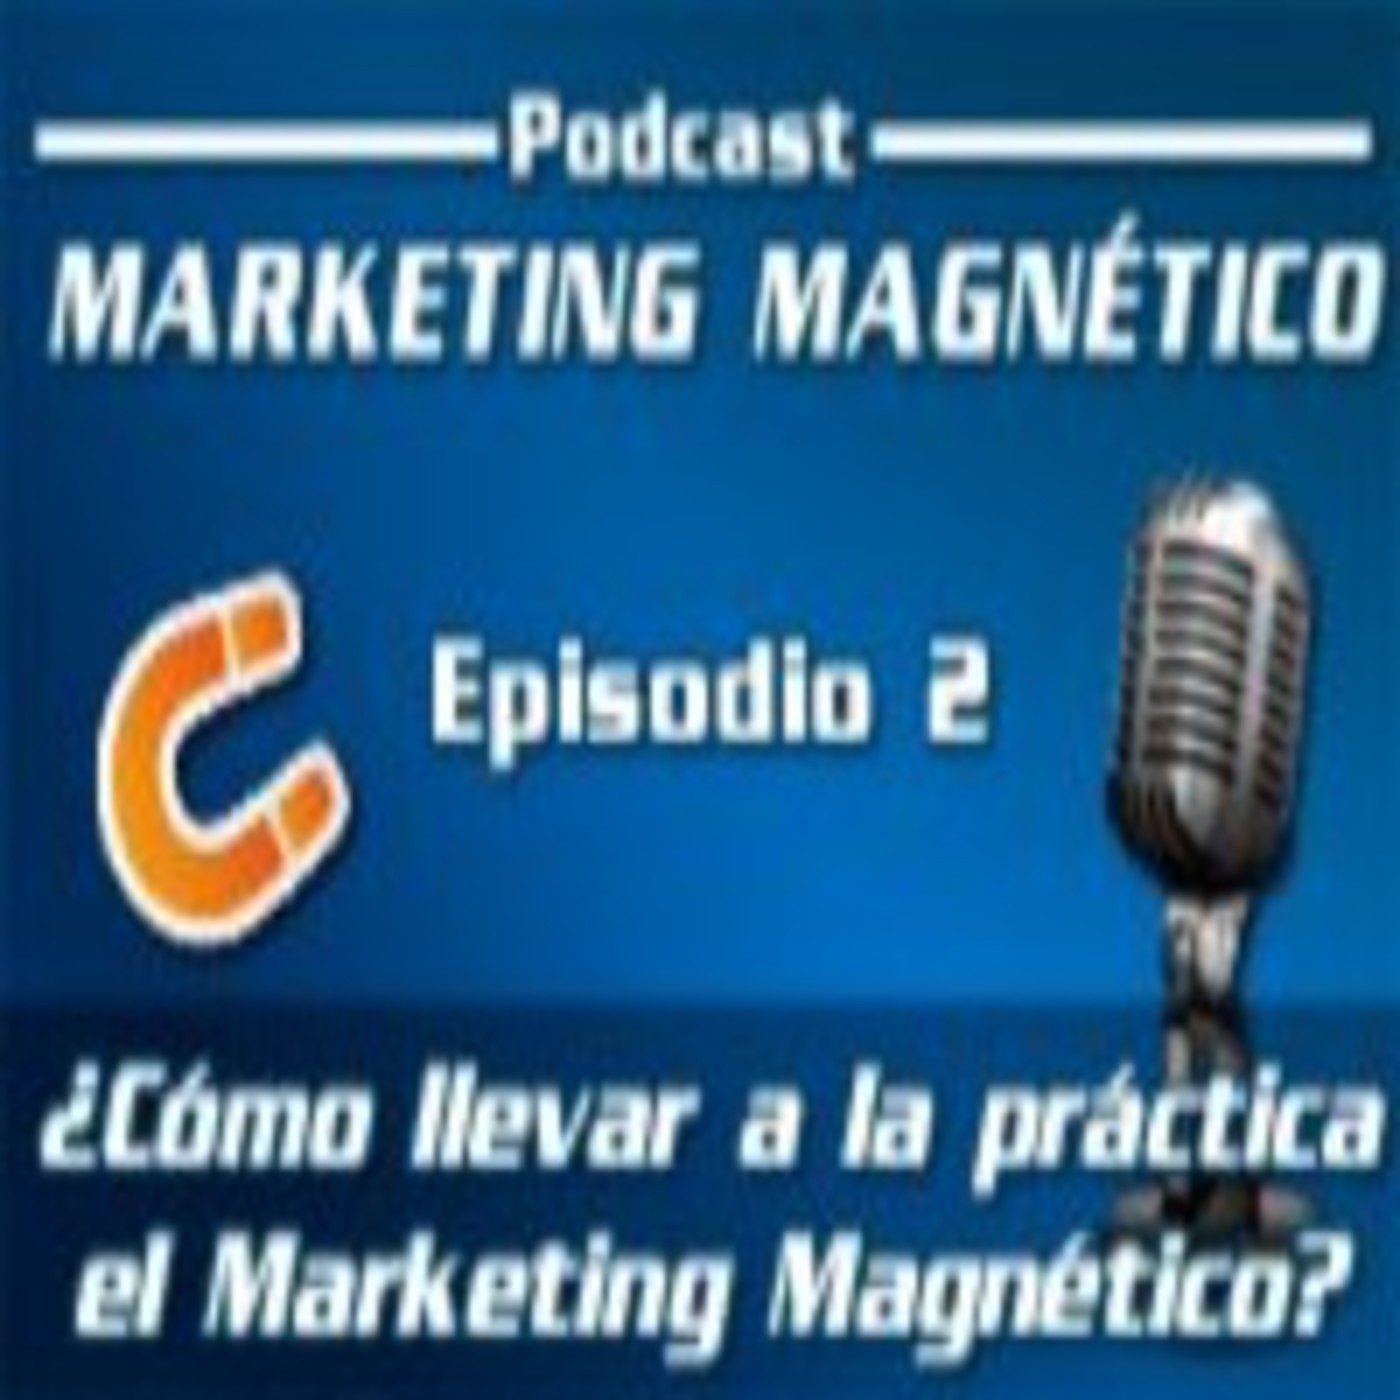 Marketing Magnético - Episodio 2 - ¿Cómo llevar a la práctica el Marketing Magnético?